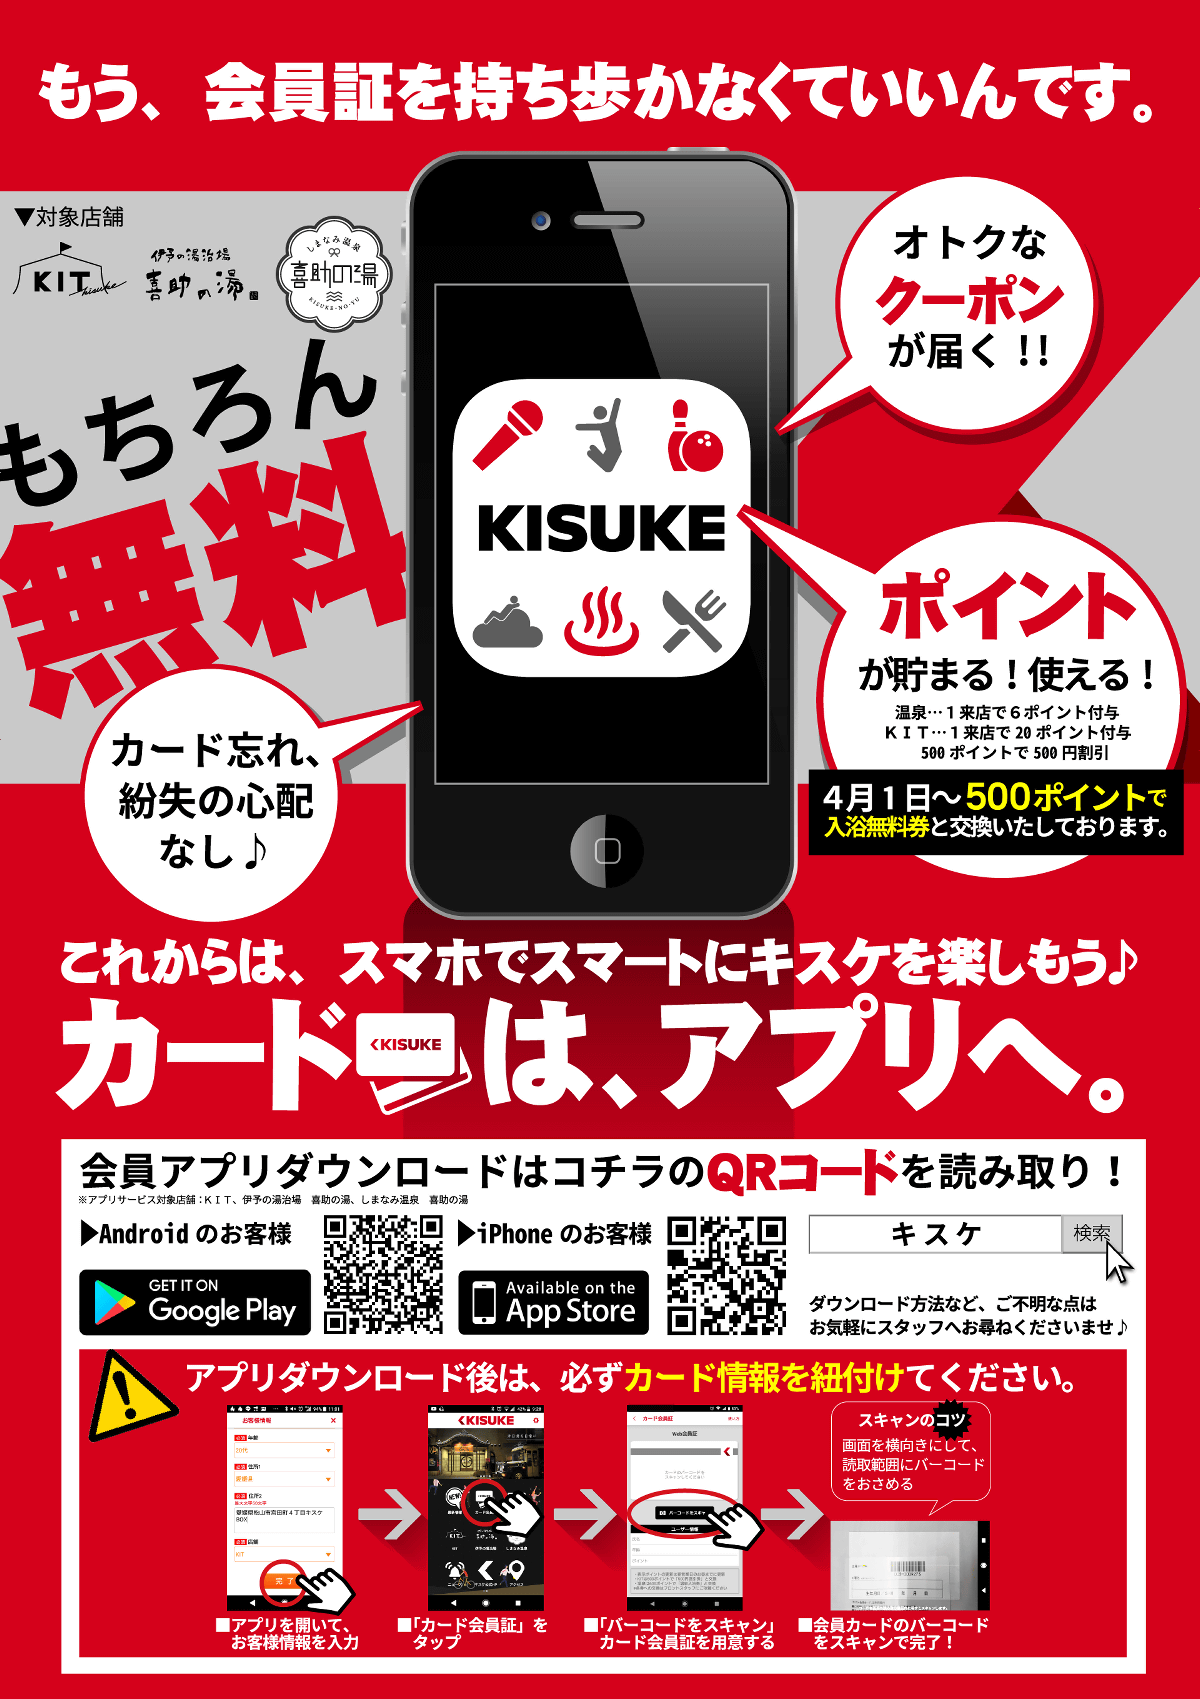 キスケのアプリがダウンロード スタート ニュース イベント情報 Kit キット キスケ株式会社